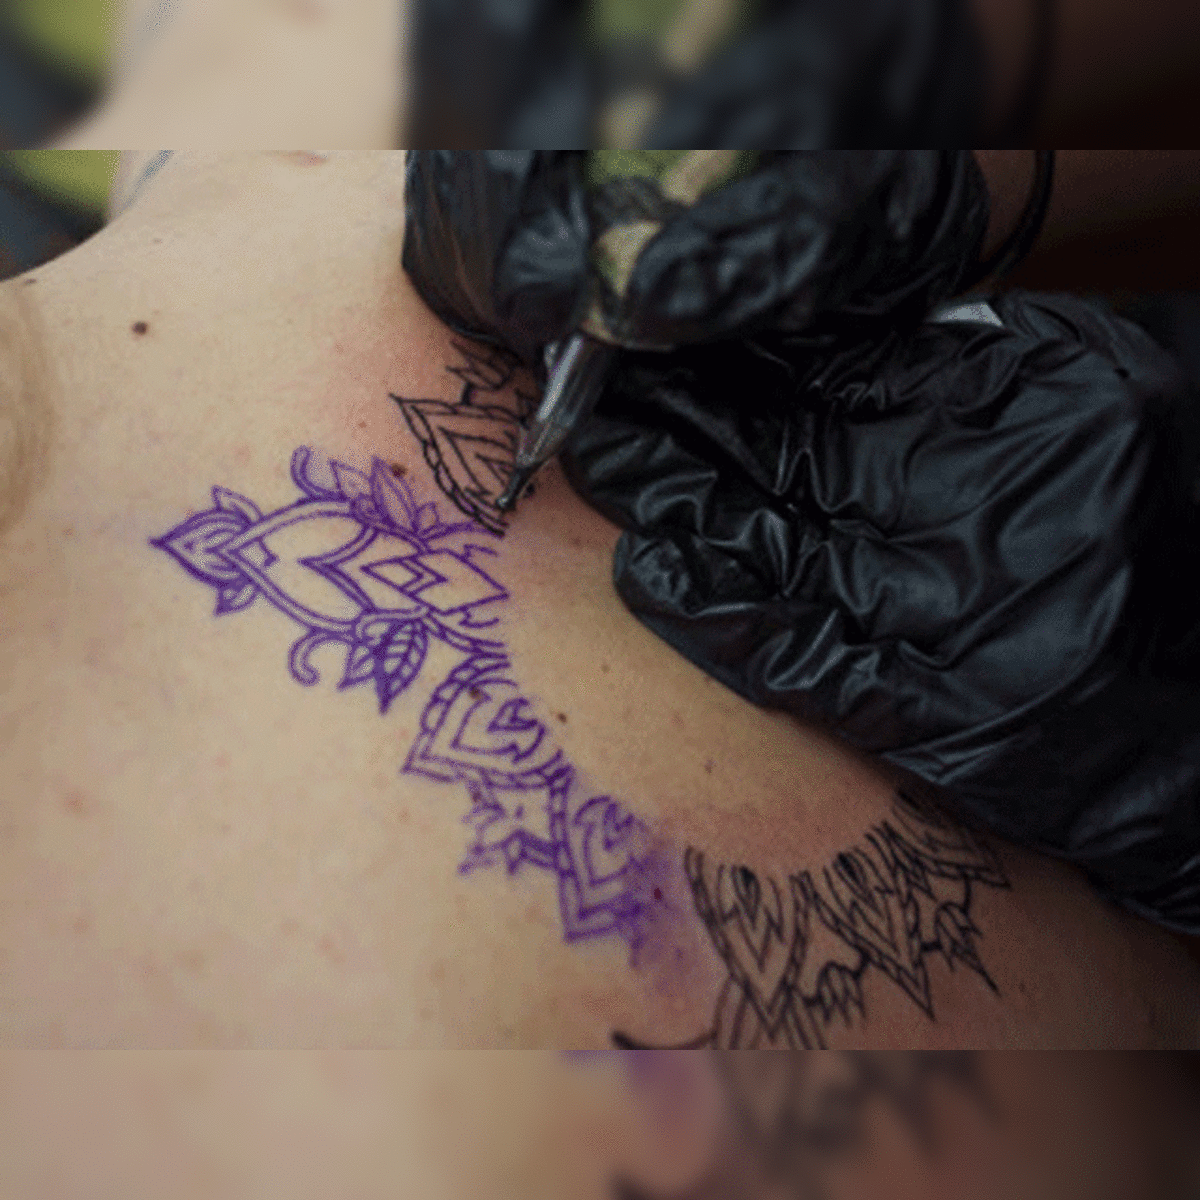 13 Sculp tattoos ideas | tattoos, tattoo studio, cool tattoos